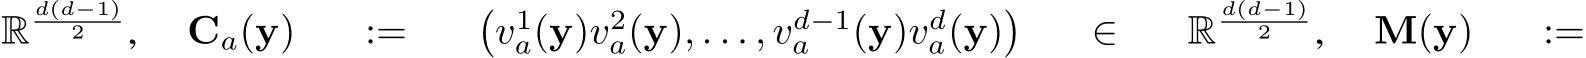 Rd(d−1)2 , Ca(y) := �v1a(y)v2a(y), . . . , vd−1a (y)vda(y)� ∈ Rd(d−1)2 , M(y) :=